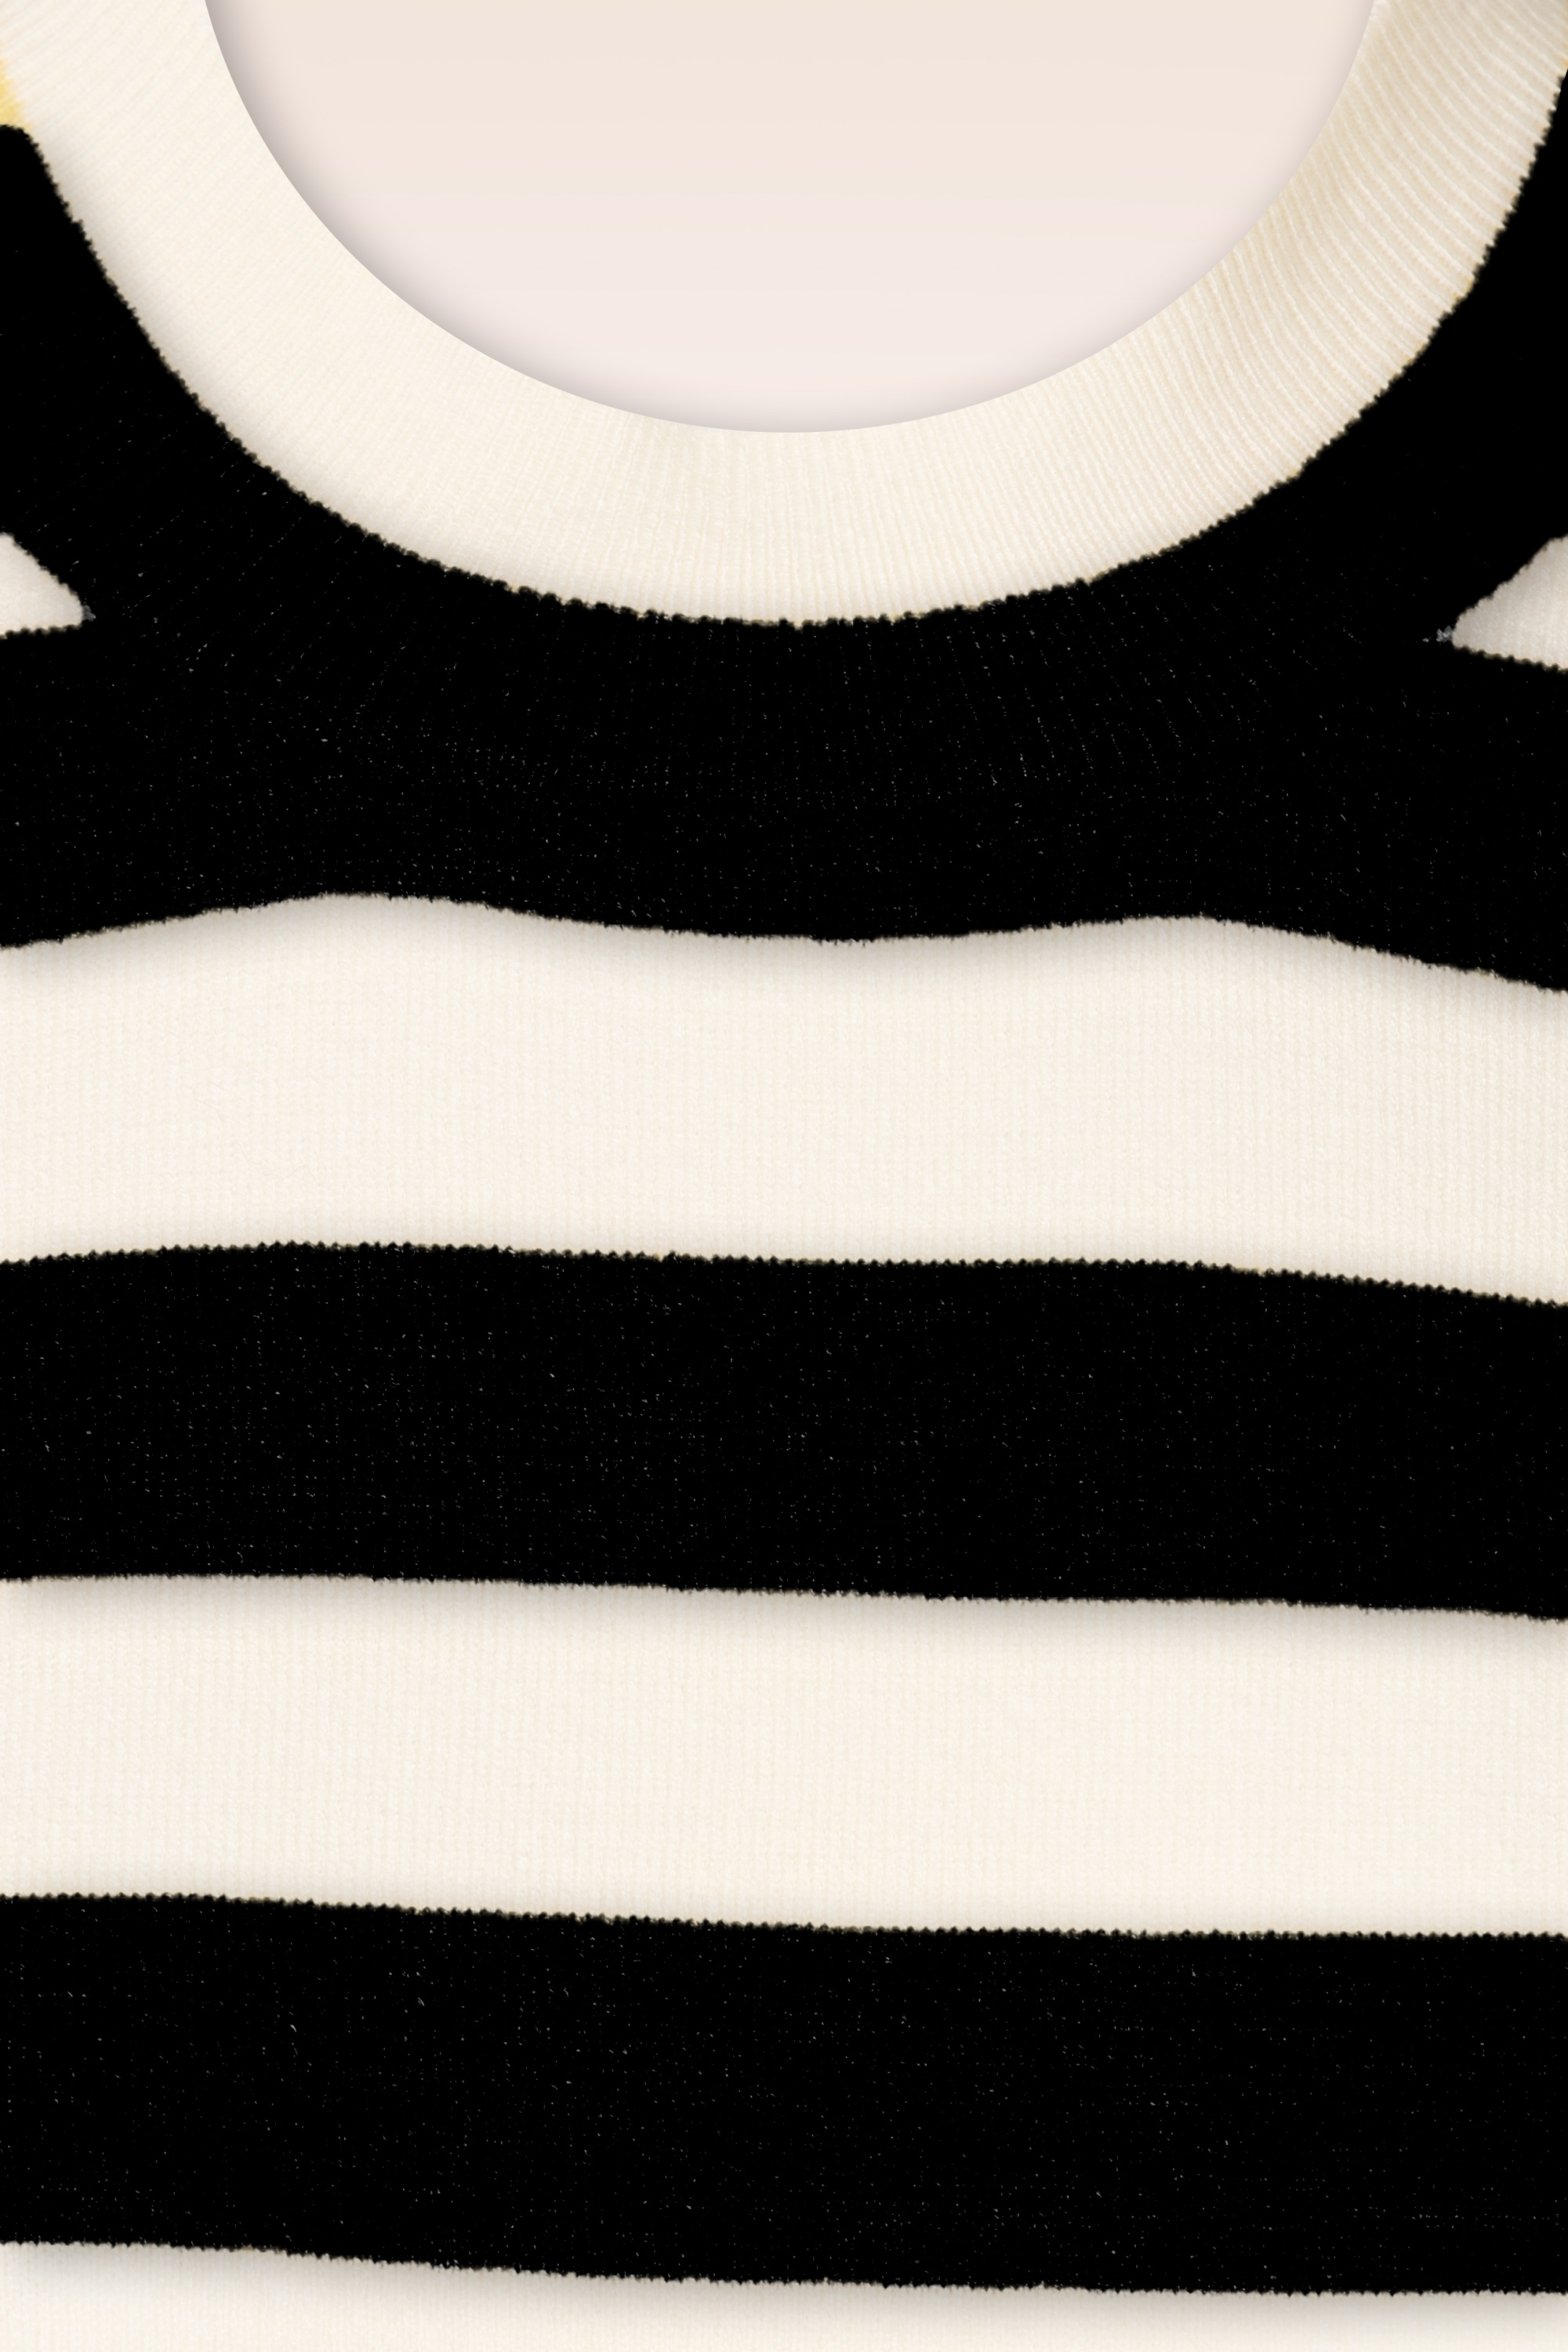 Compania Fantastica - Lucy jumper in zwart en wit 4